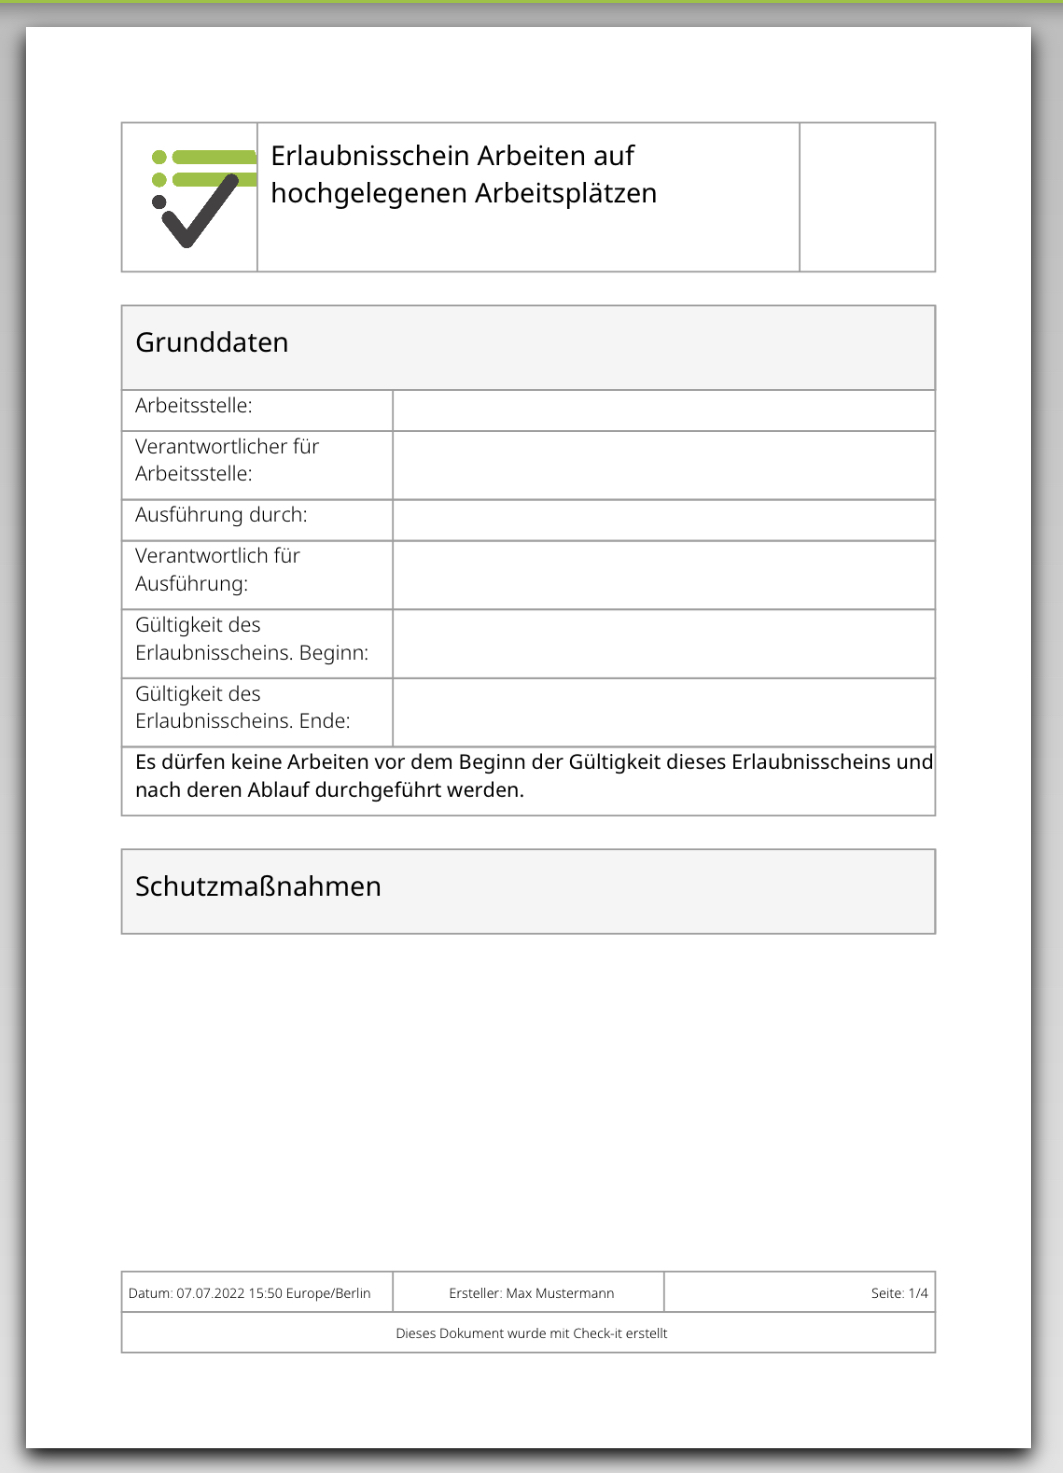 Das Bild zeigt die PDF Datei die generiert wird, wenn die Checkliste "Erlaubnisschein Arbeiten auf hochgegangenen Arbeitsplätzen" auf der Check-it App ausgefüllt wird